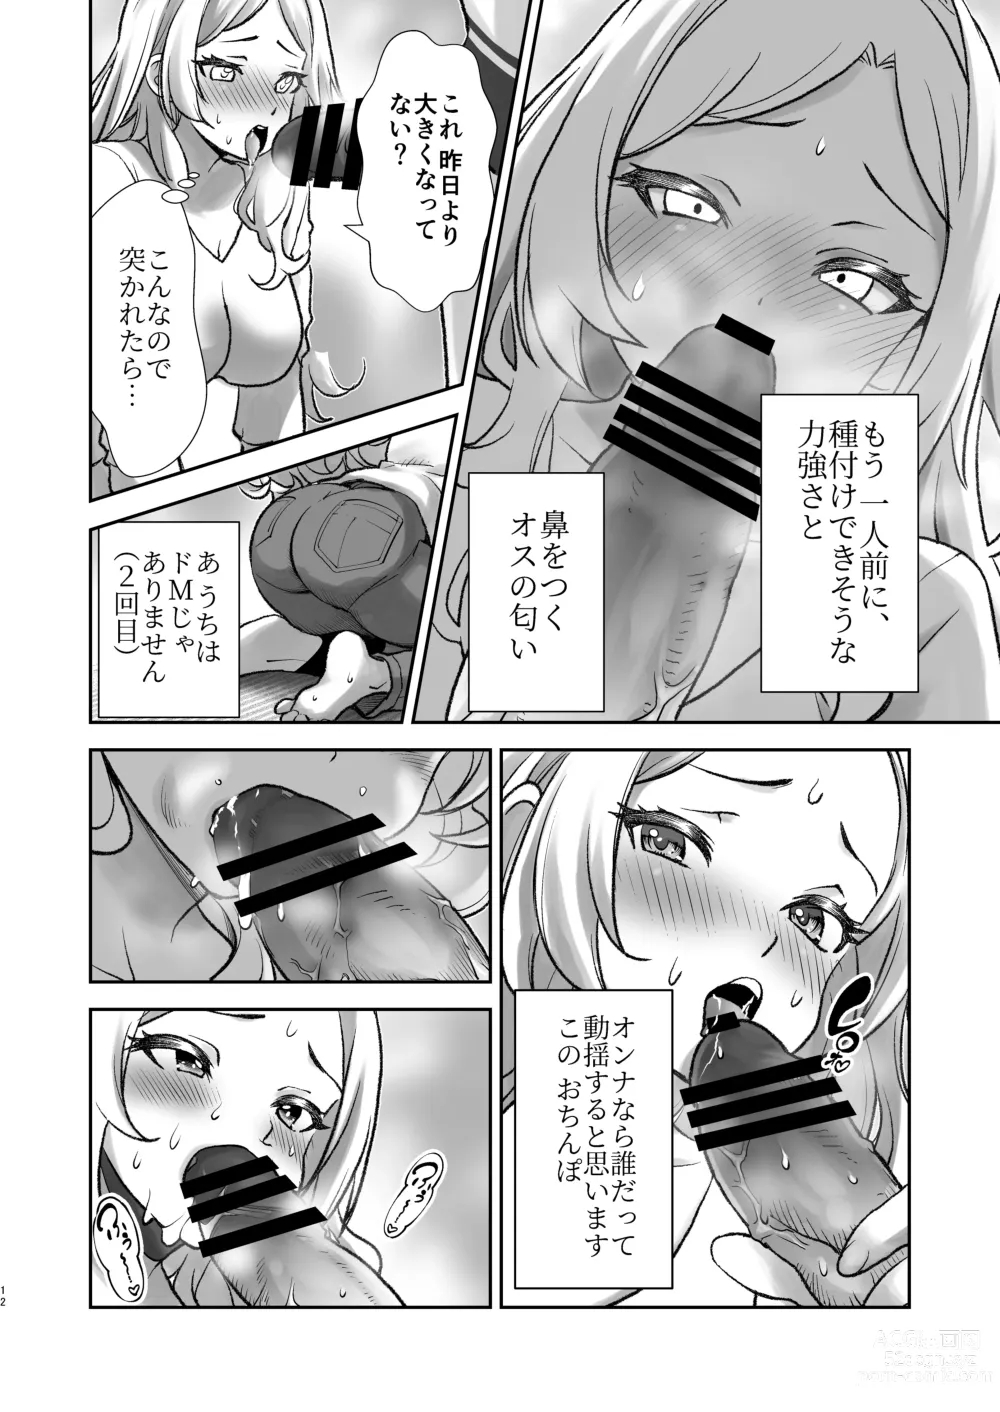 Page 12 of doujinshi Mura ni wa Juku ga Nai no de Watashi ga Benkyou wo Oshiete-imasu.